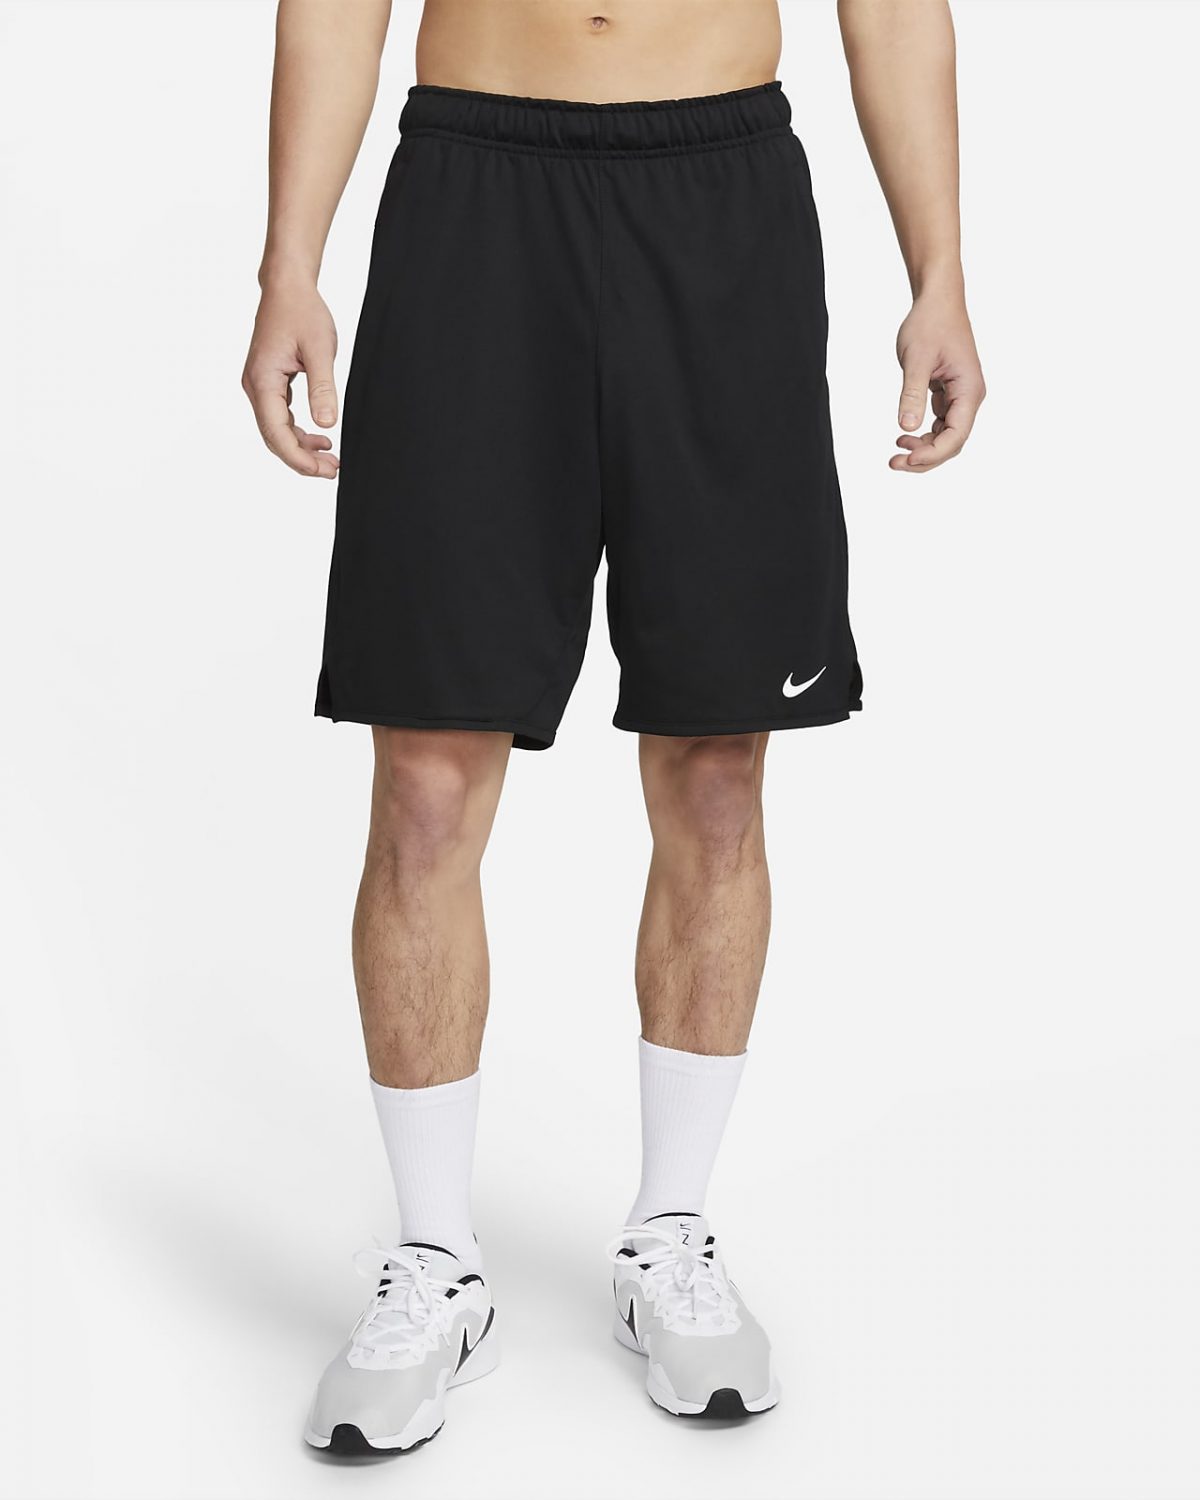 Мужские шорты Nike Dri-FIT Totality фото